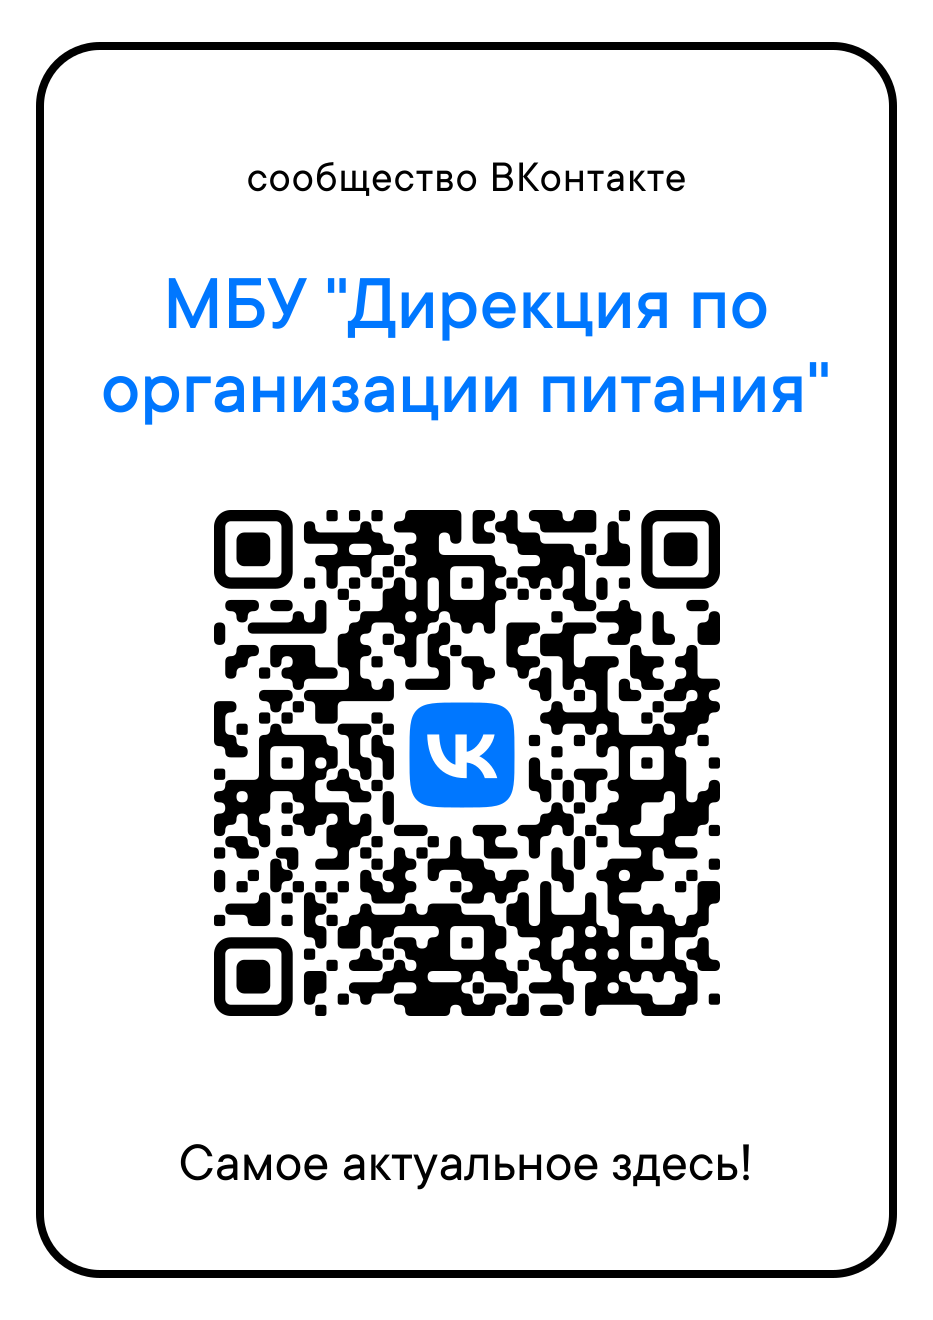 QR код организации. Пароли на приложения коды. Код Армении с мобильного. Информация о нас приложение.